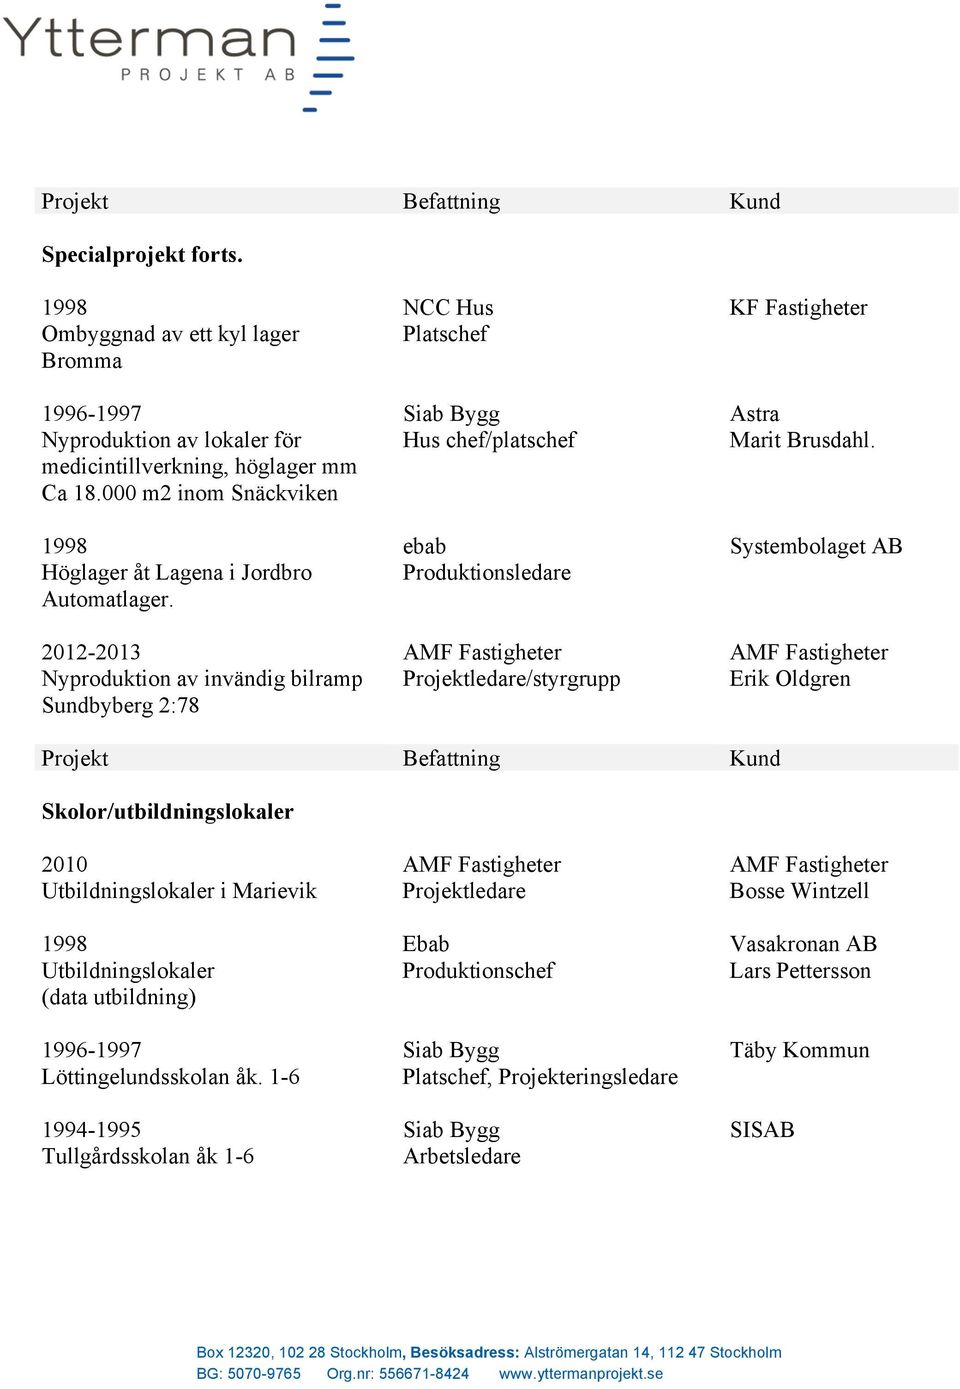 -2013 Nyproduktion av invändig bilramp Sundbyberg 2:78 NCC Hus Hus chef/platschef ebab Produktionsledare /styrgrupp KF Fastigheter Astra Marit Brusdahl.